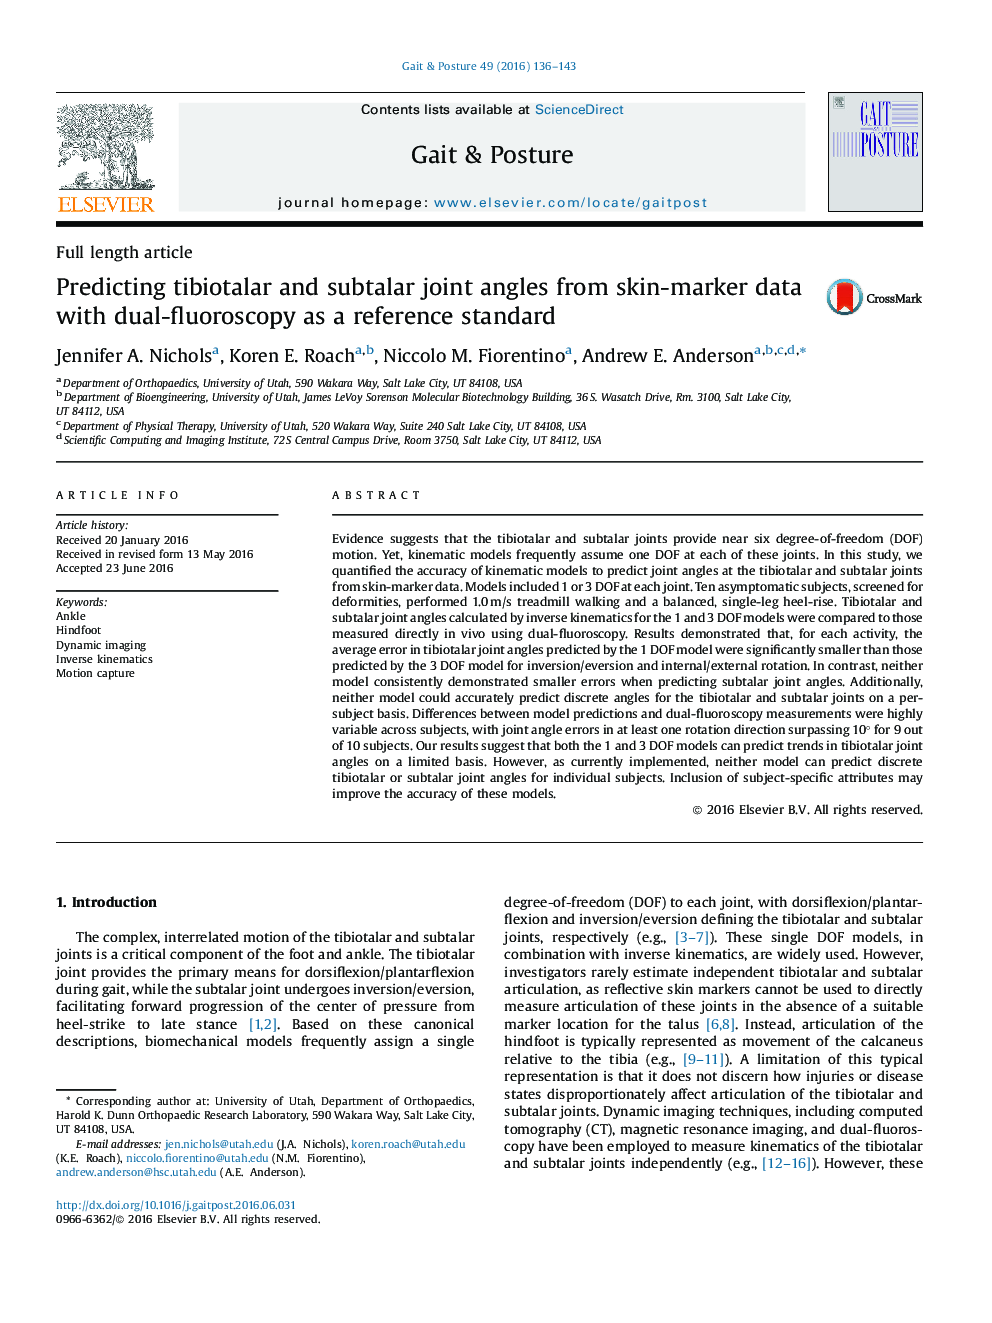 پیش بینی زوایای مفصل تیبوتیالار و سابالار از داده های نشانگر پوست با دو فلوروسکوپی به عنوان یک استاندارد مرجع 